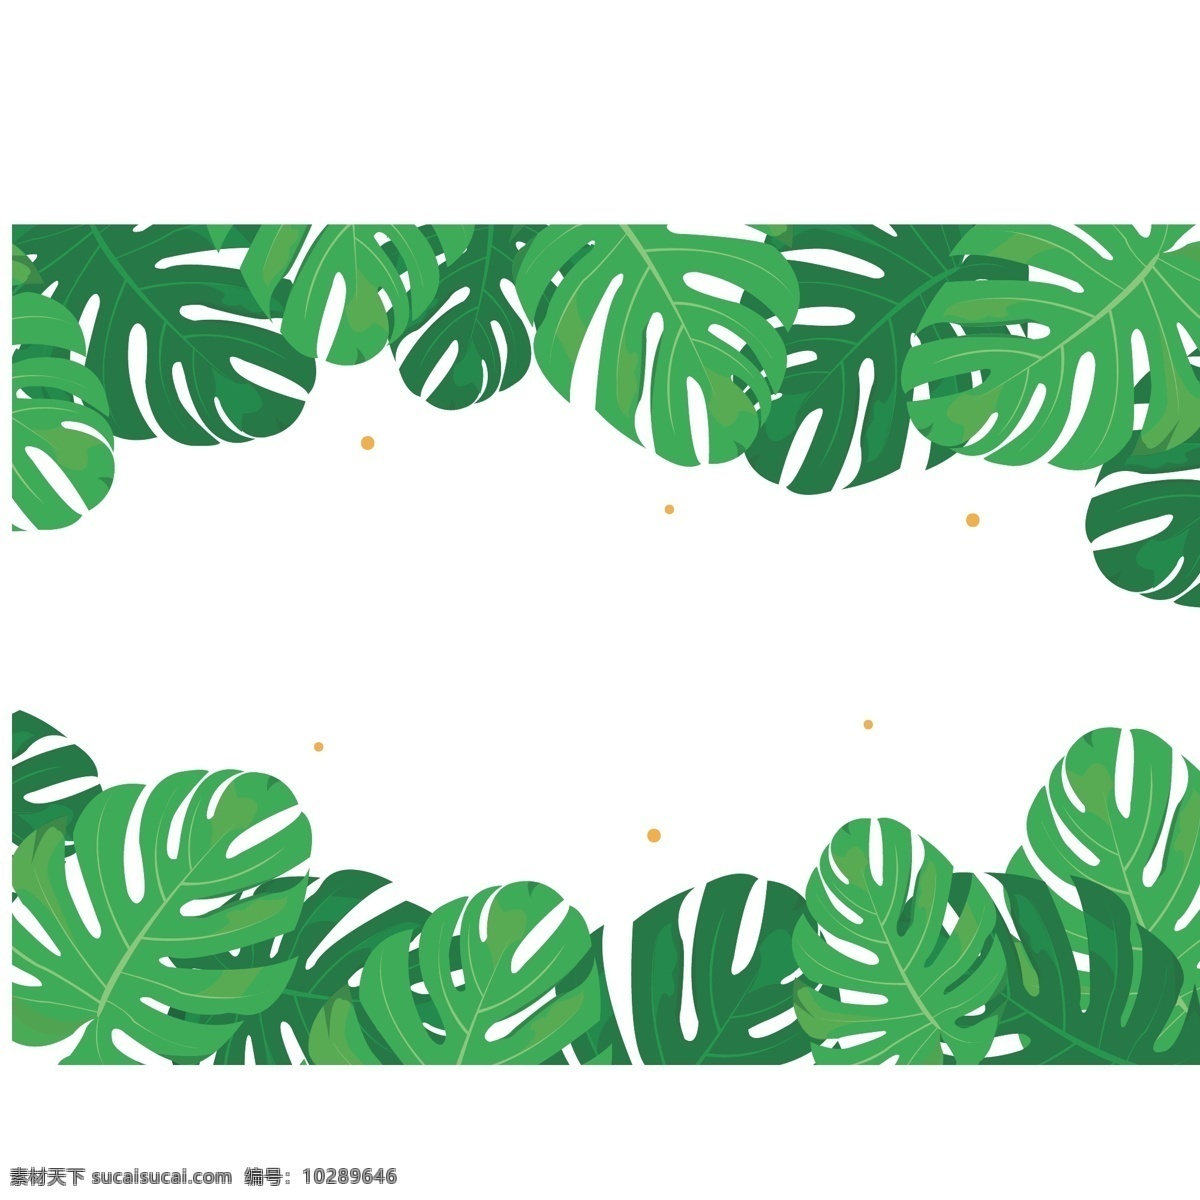 卡通 矢量 小 清新 绿色 树叶 龟背 叶 边框 绿色树叶 小清新 banner 促销 夏季